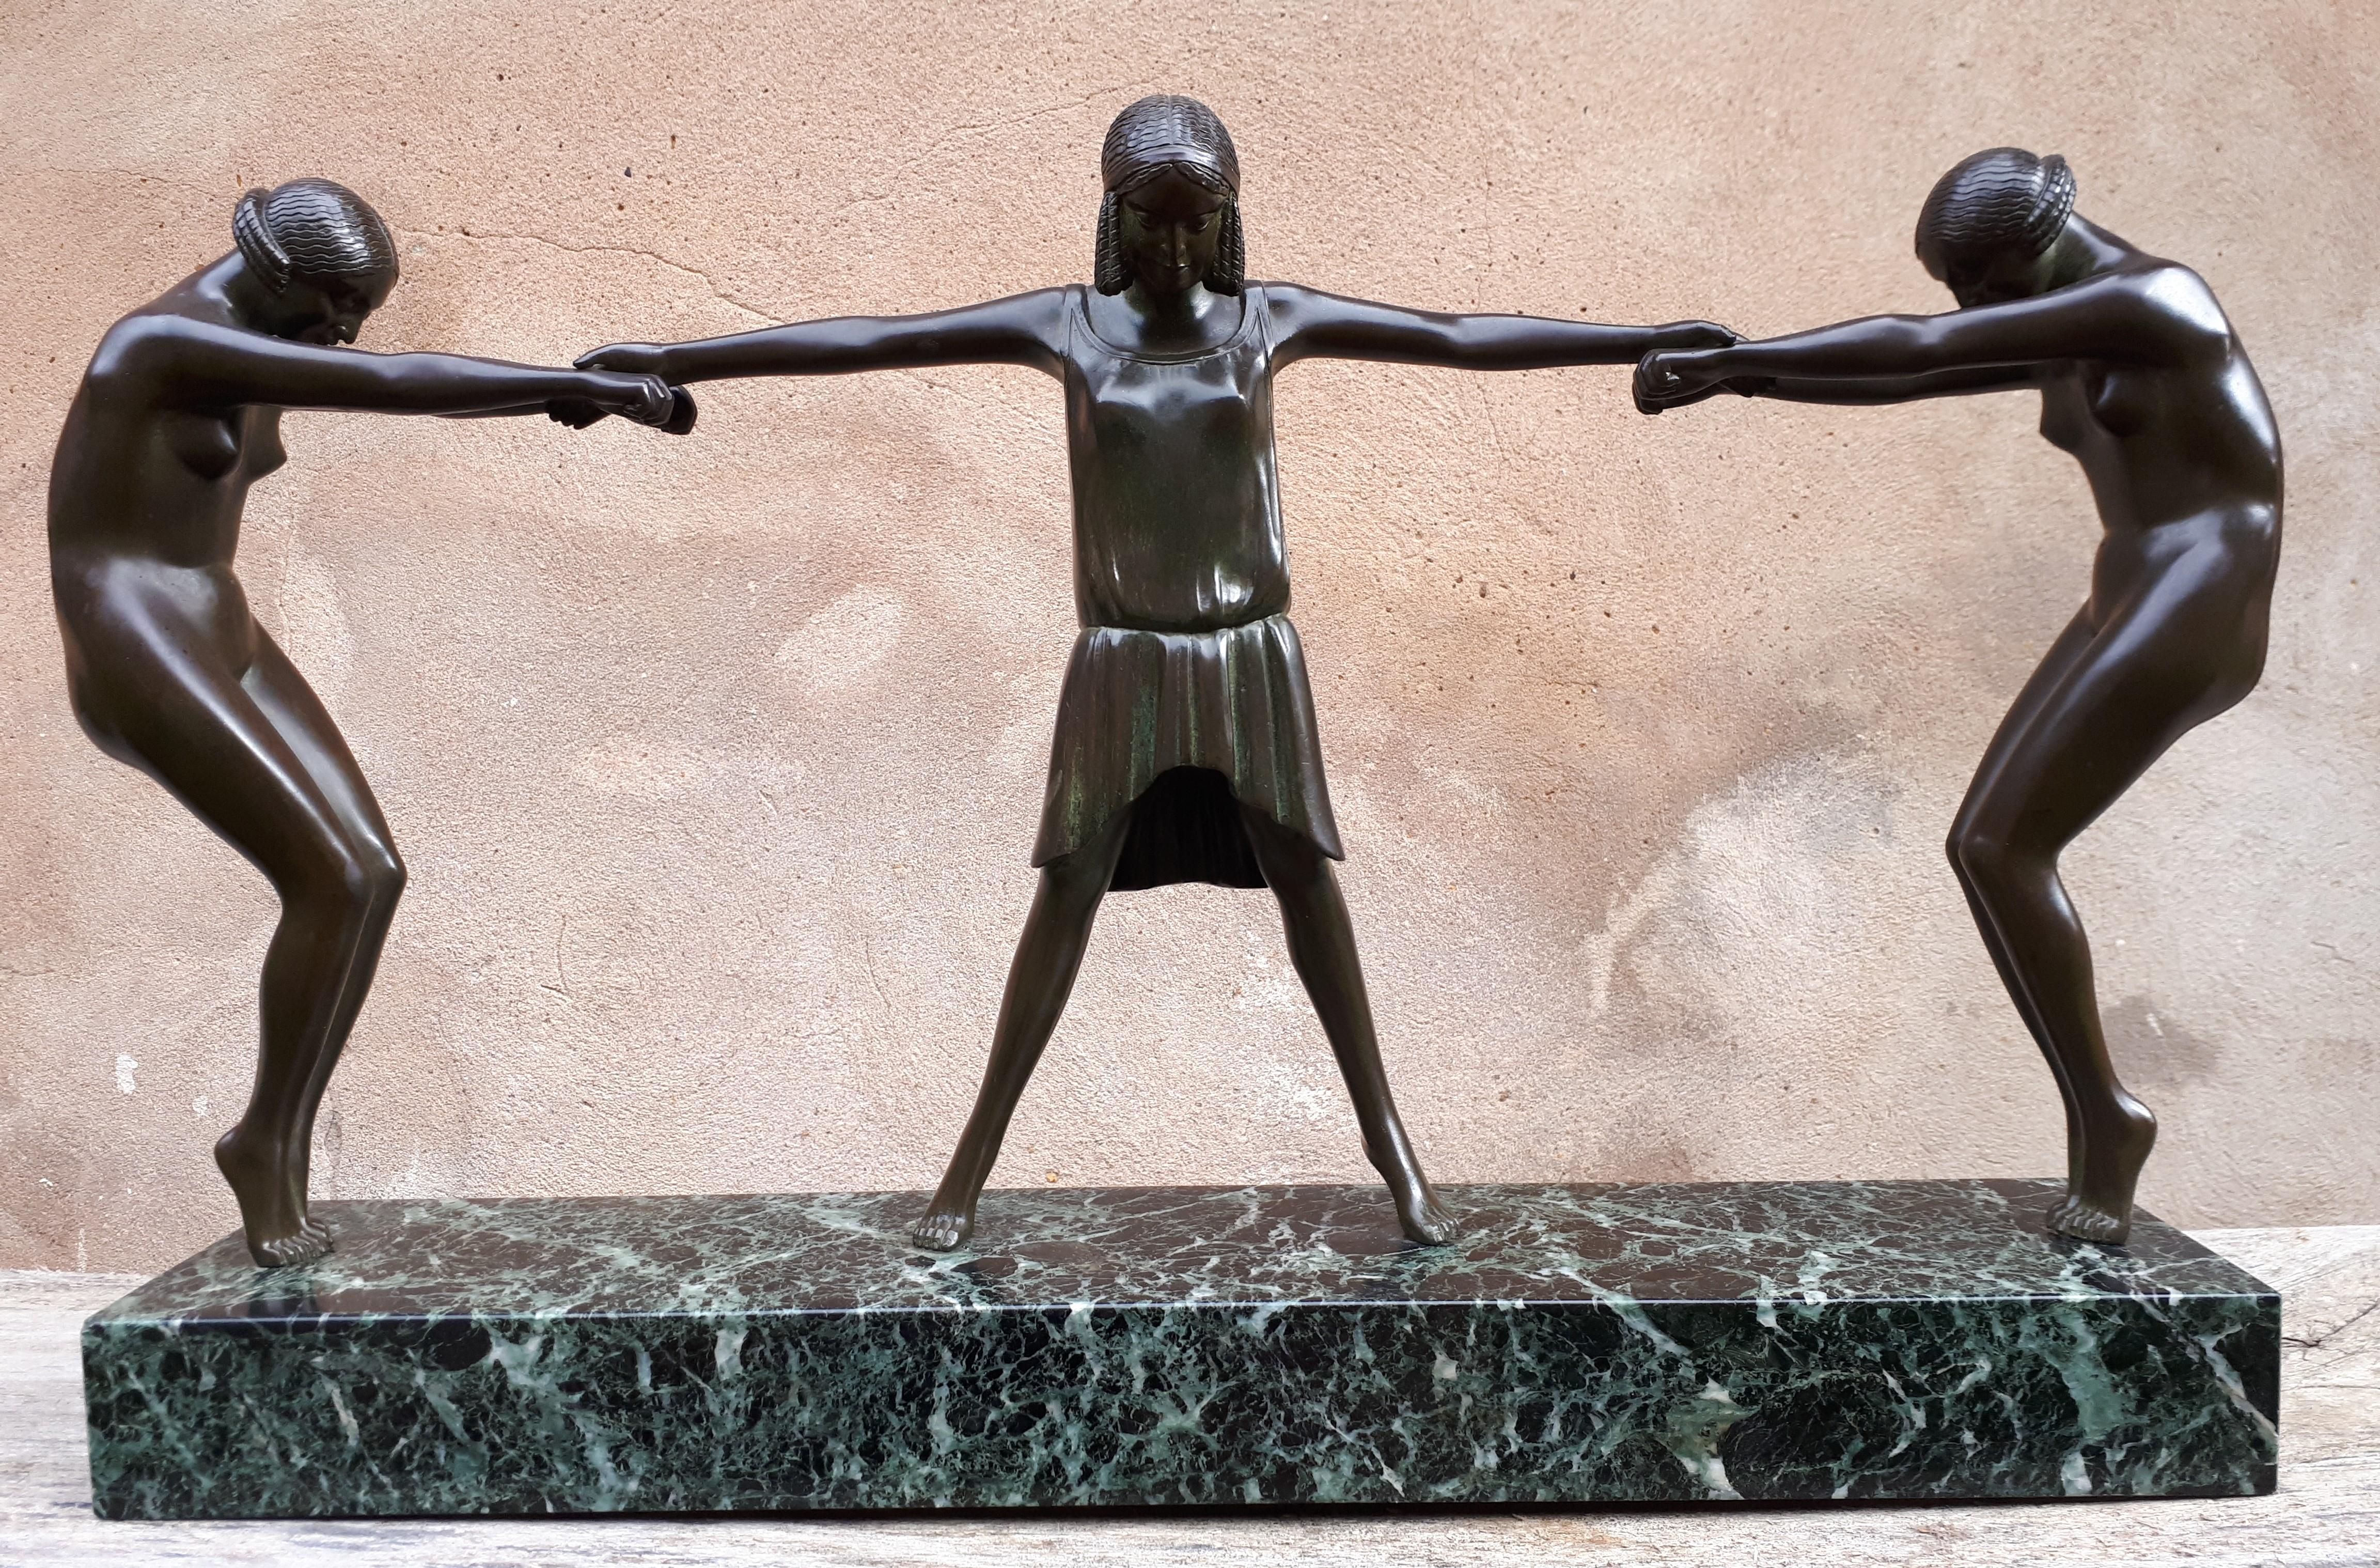 Importante sculpture en bronze à patine vert-brun représentant trois grâces.
Le marbre peut ne pas être d'origine, d'où l'absence de signature.
Fonte de qualité supérieure, ancienne édition.
France, datant d'environ 1925.